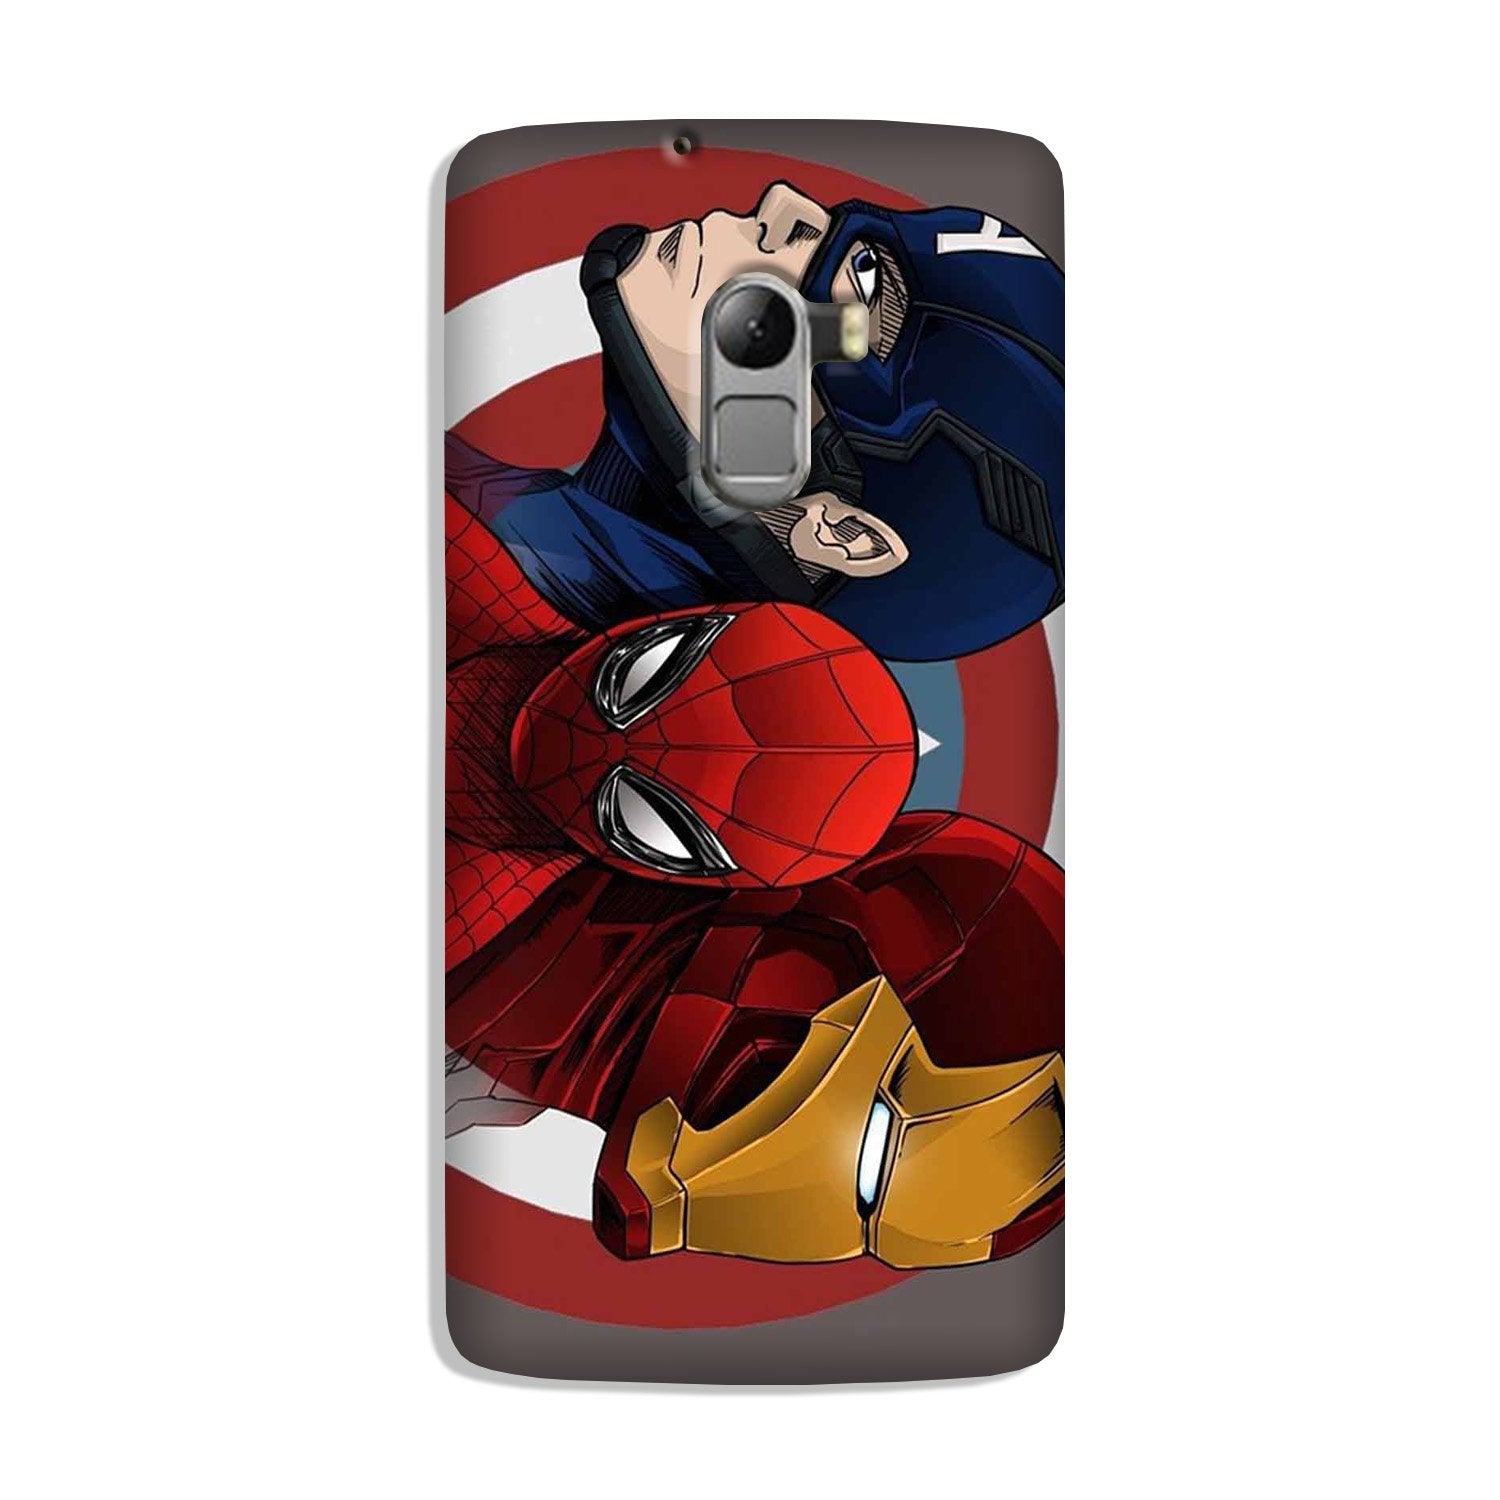 Superhero Mobile Back Case for Lenovo K4 Note (Design - 311)